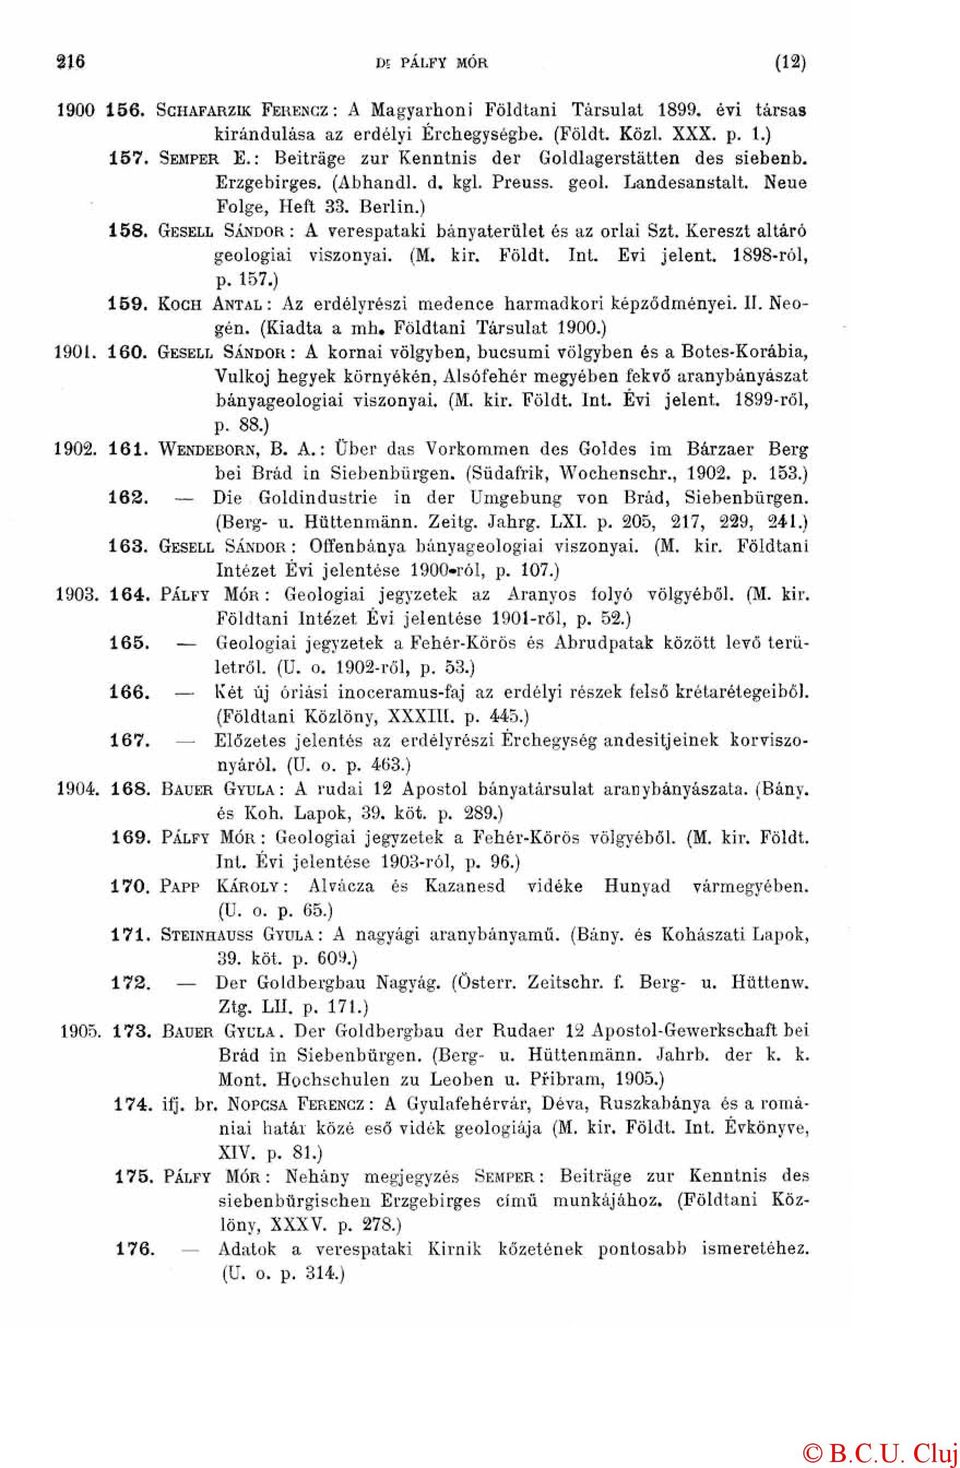 GESELL SÁNDOR: A verespataki bányaterület és az orlai Szt. Kereszt altáró geologiai viszonyai. (M. kir. Földt. Int. Evi jelent. 1898-ról, p. 157.) 159.